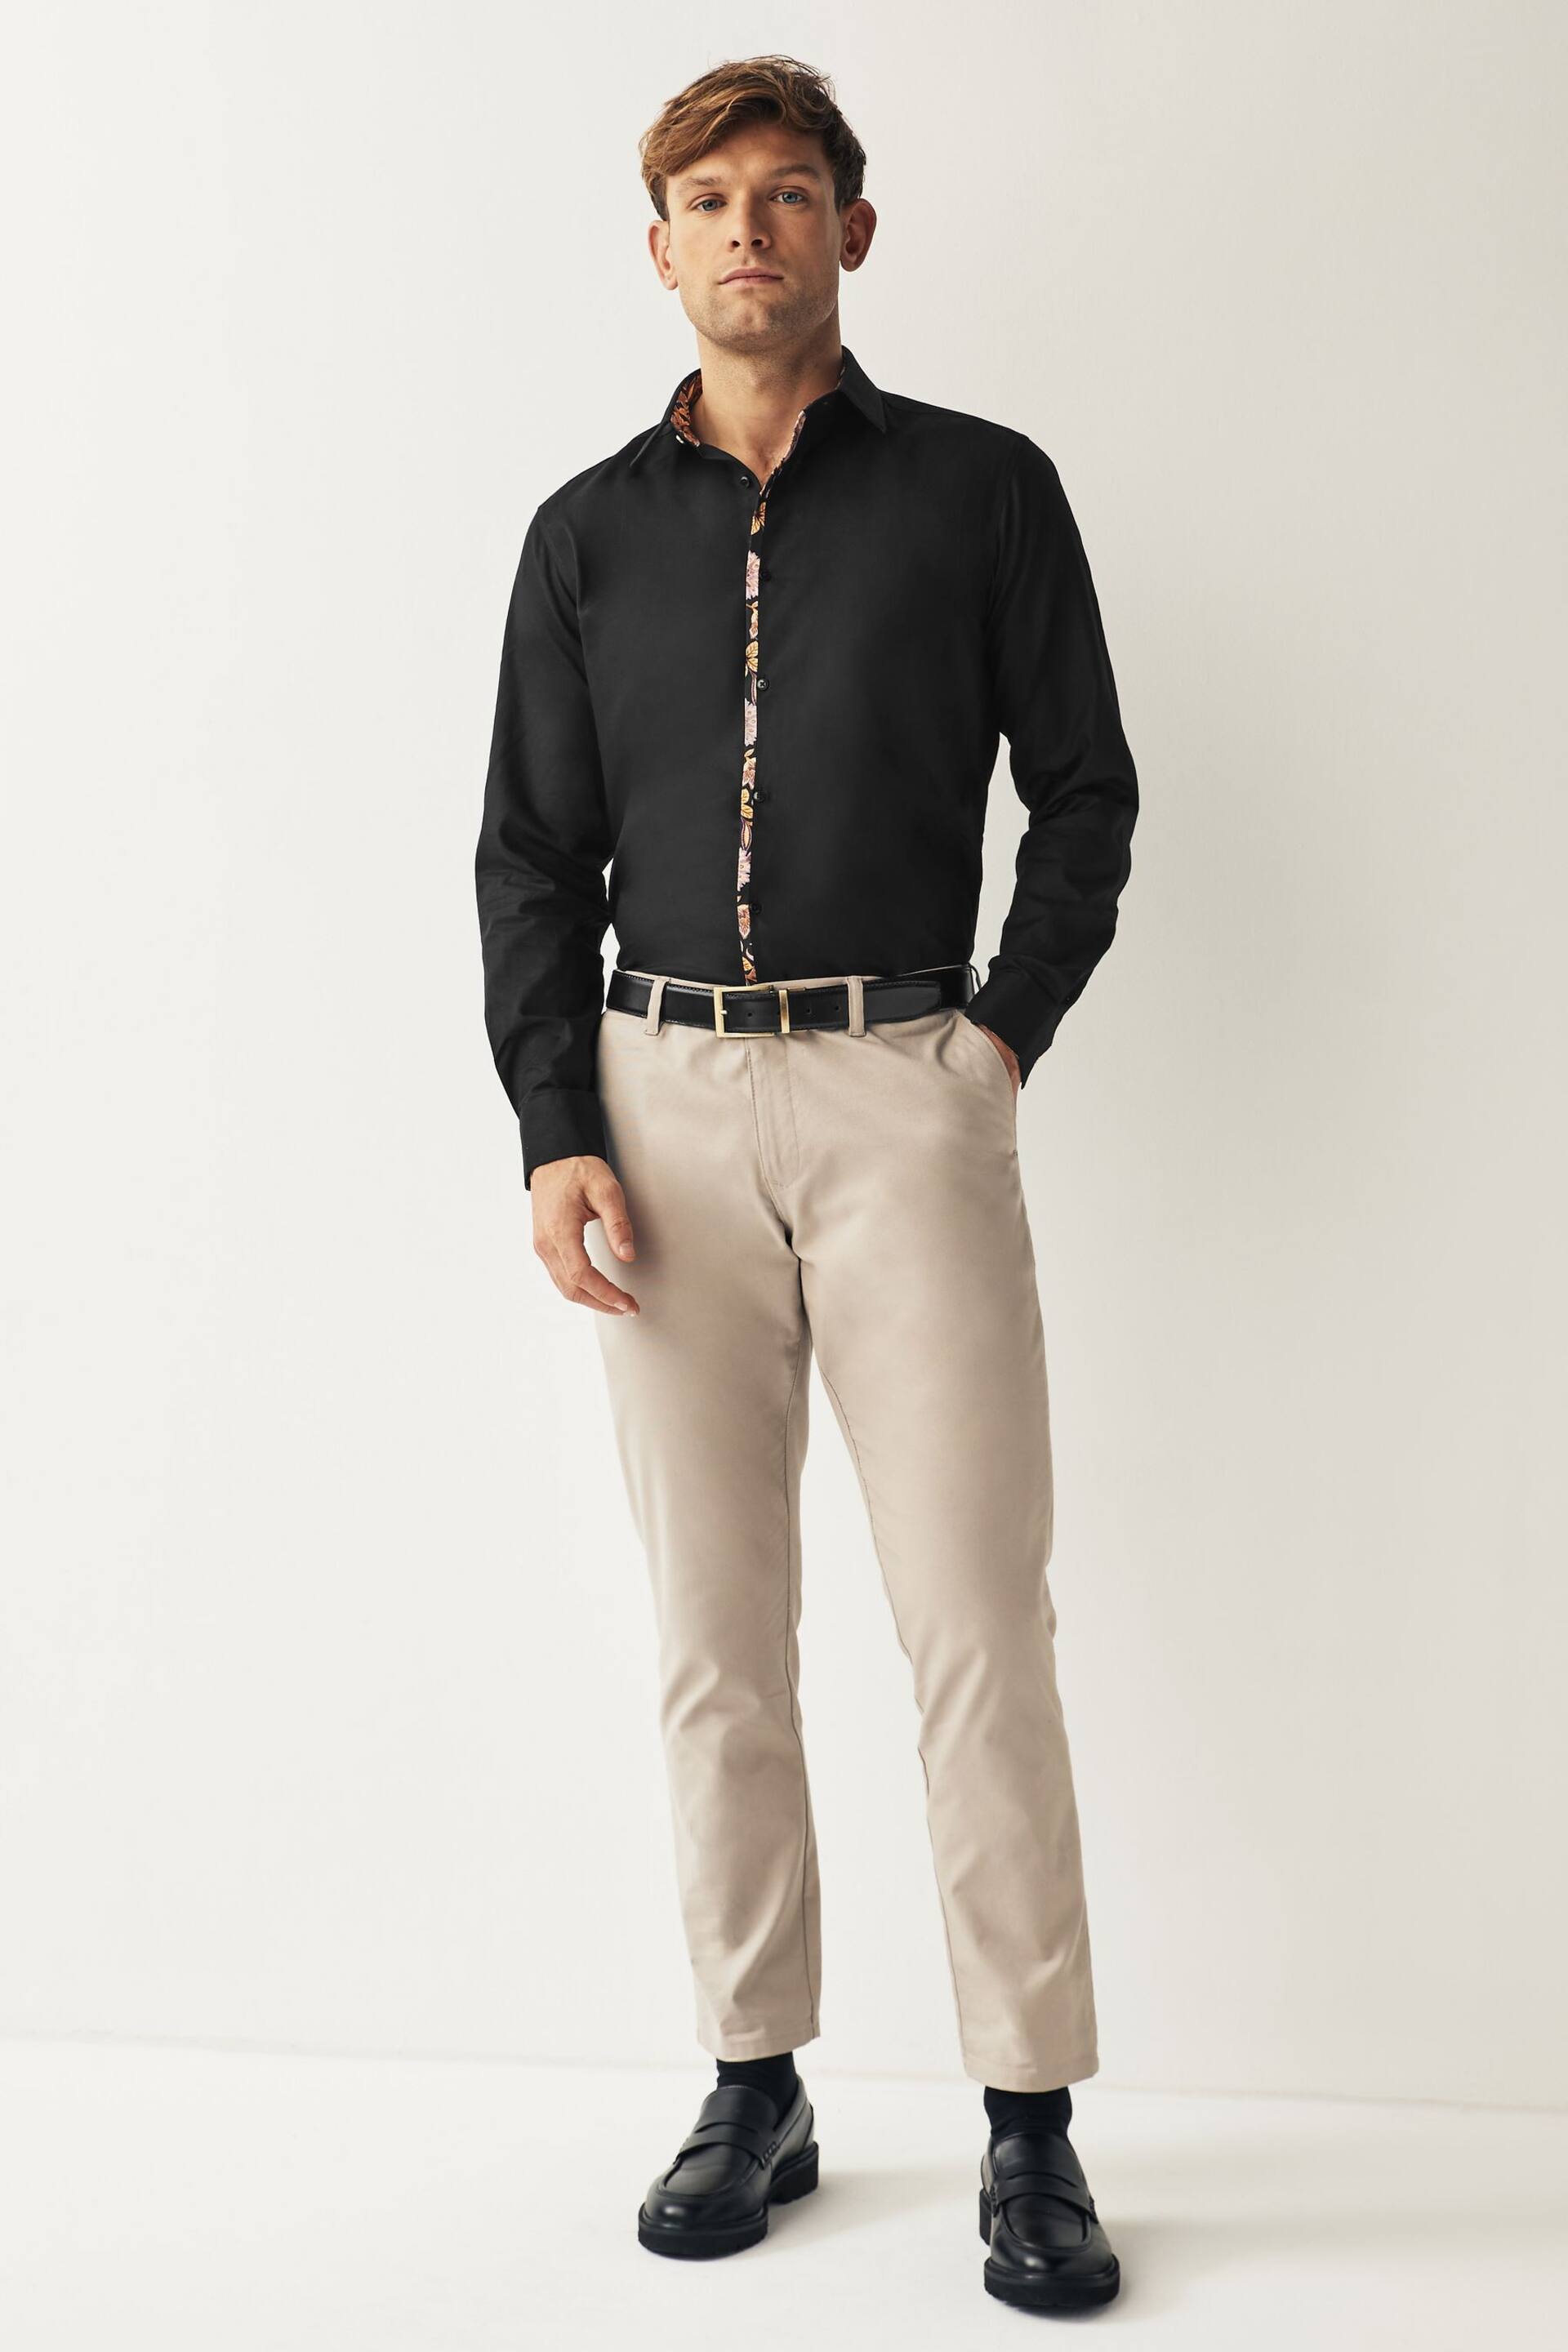 Black Slim Fit Trimmed Formal Shirt - Image 2 of 10